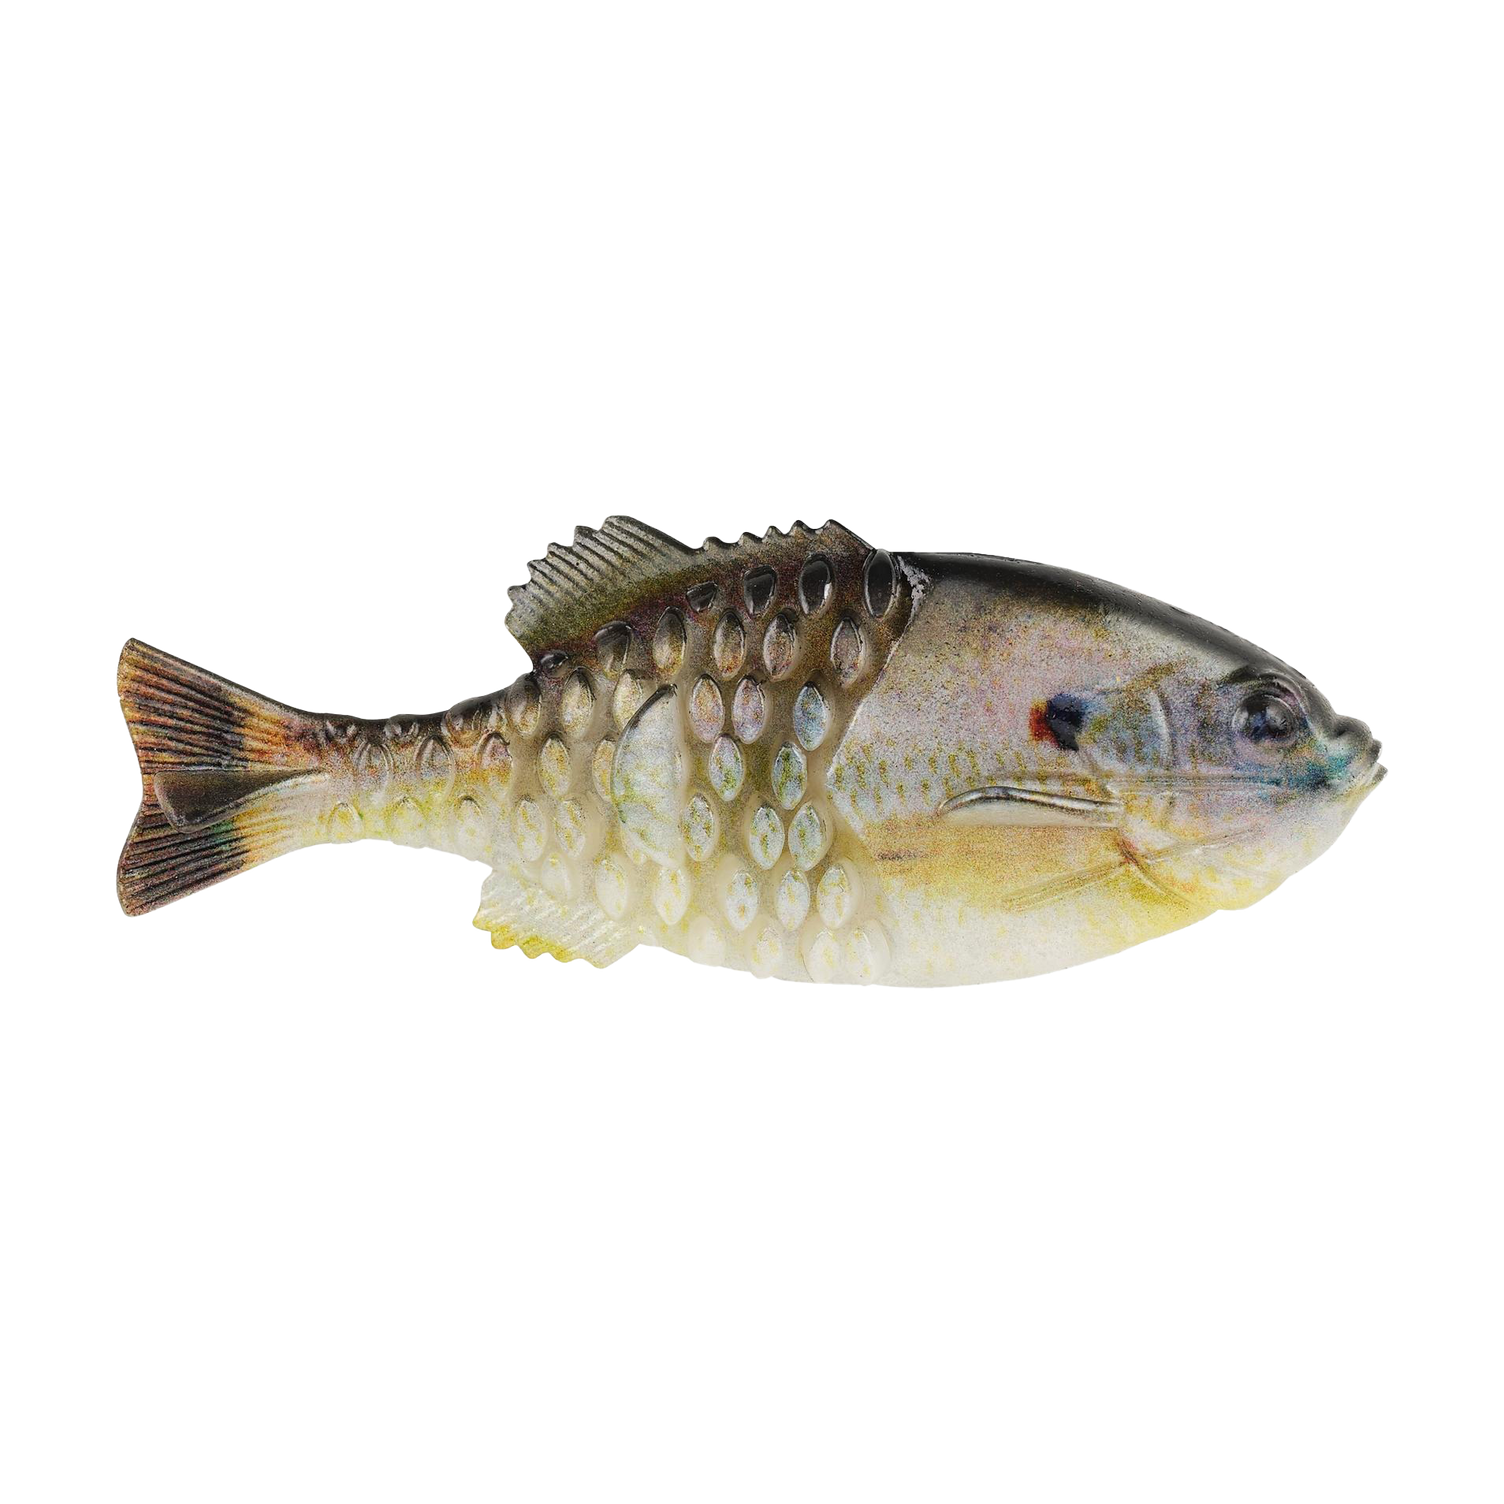 Berkley Powerbait Gilly 90mm Swimbait Soft Plastic Fishing Lure #HD Sunfish